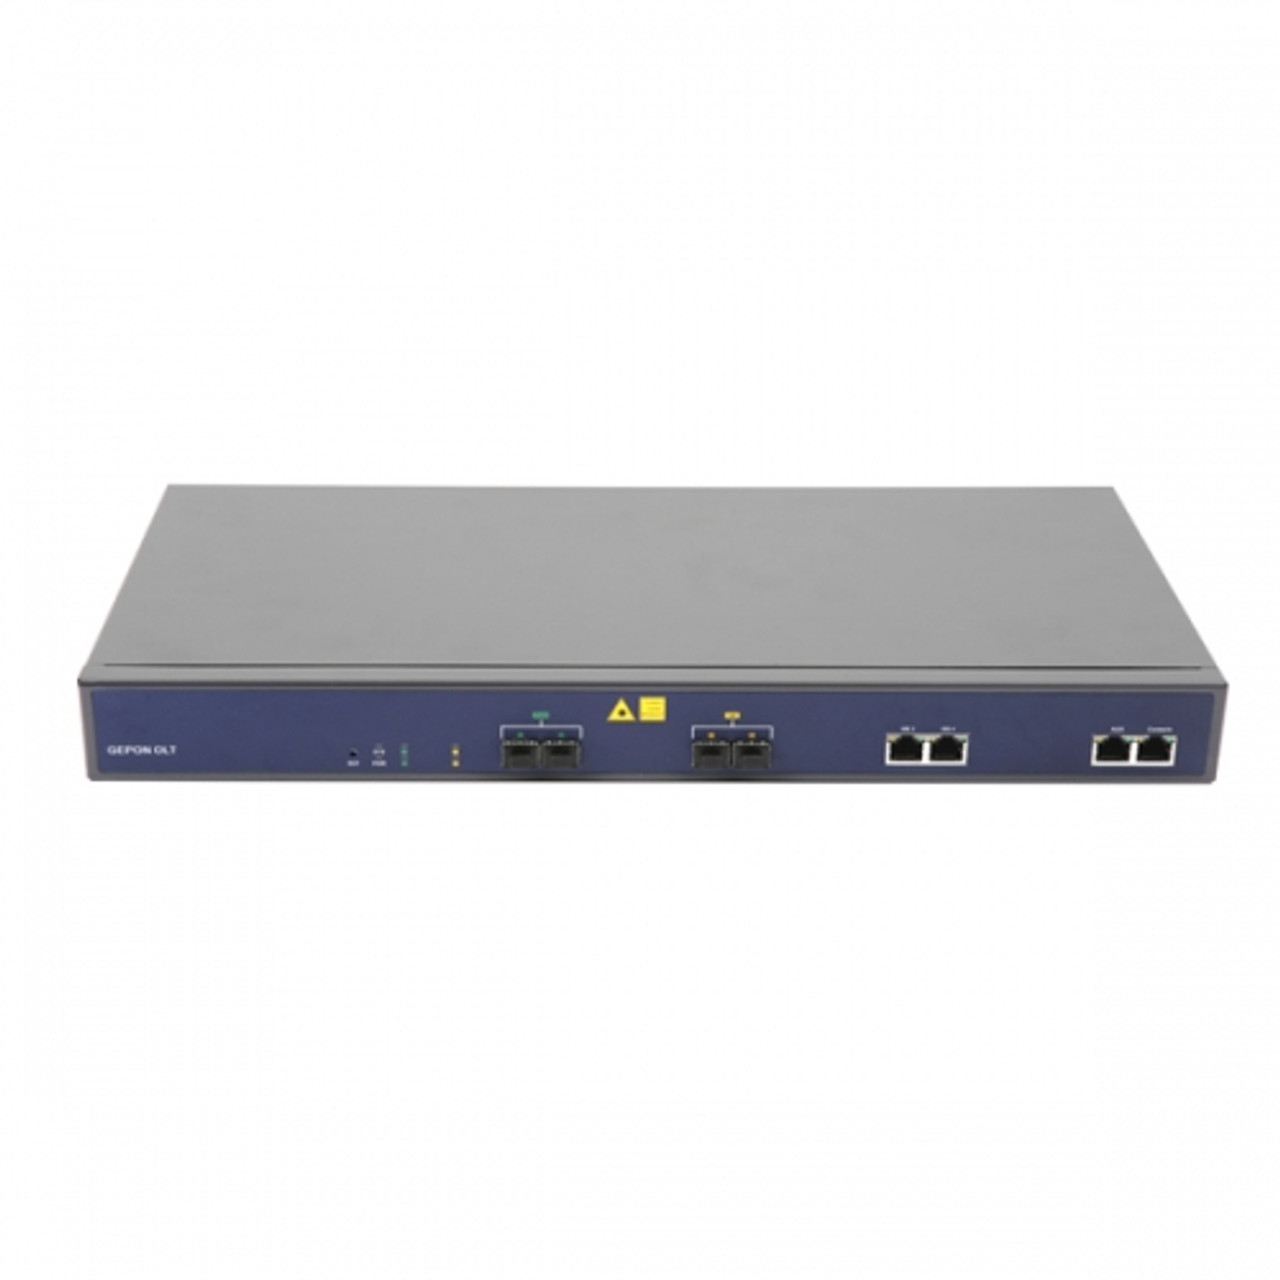 OLT de 2 puerto EPON + 4 puertos Uplink (2 puertos Gigabit Ethernet + 1 puerto SFP) , hasta 128 ONU <br>  <strong>Código SAT:</strong> 43222610 - V-SOL